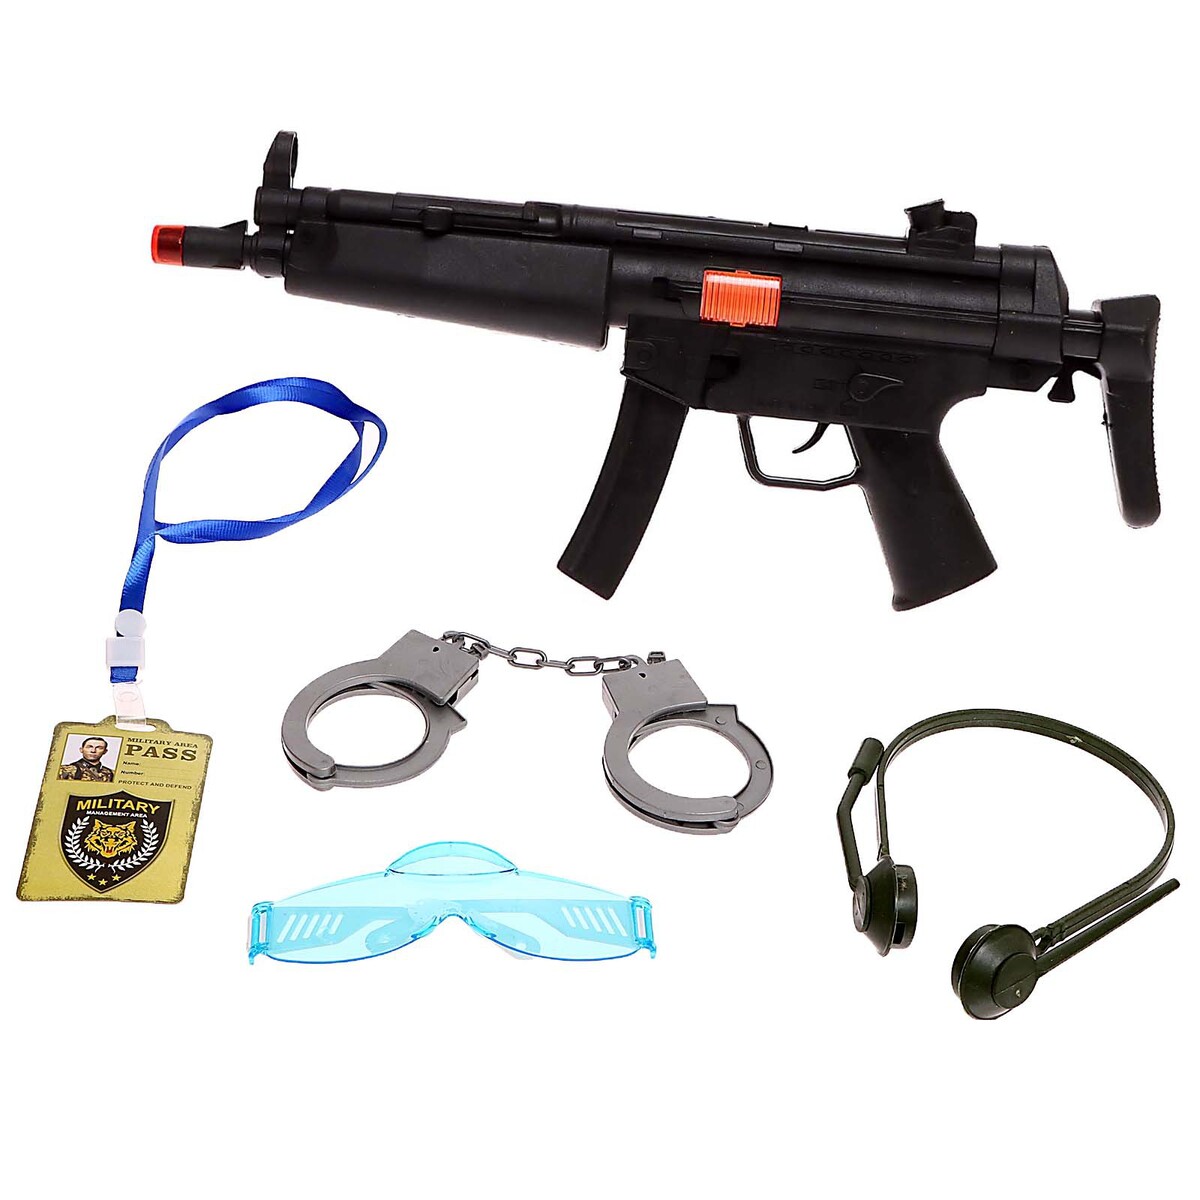 Набор полицейского детский игровой набор полицейского veld co 8 предметов игрушечные оружия для детей 123973